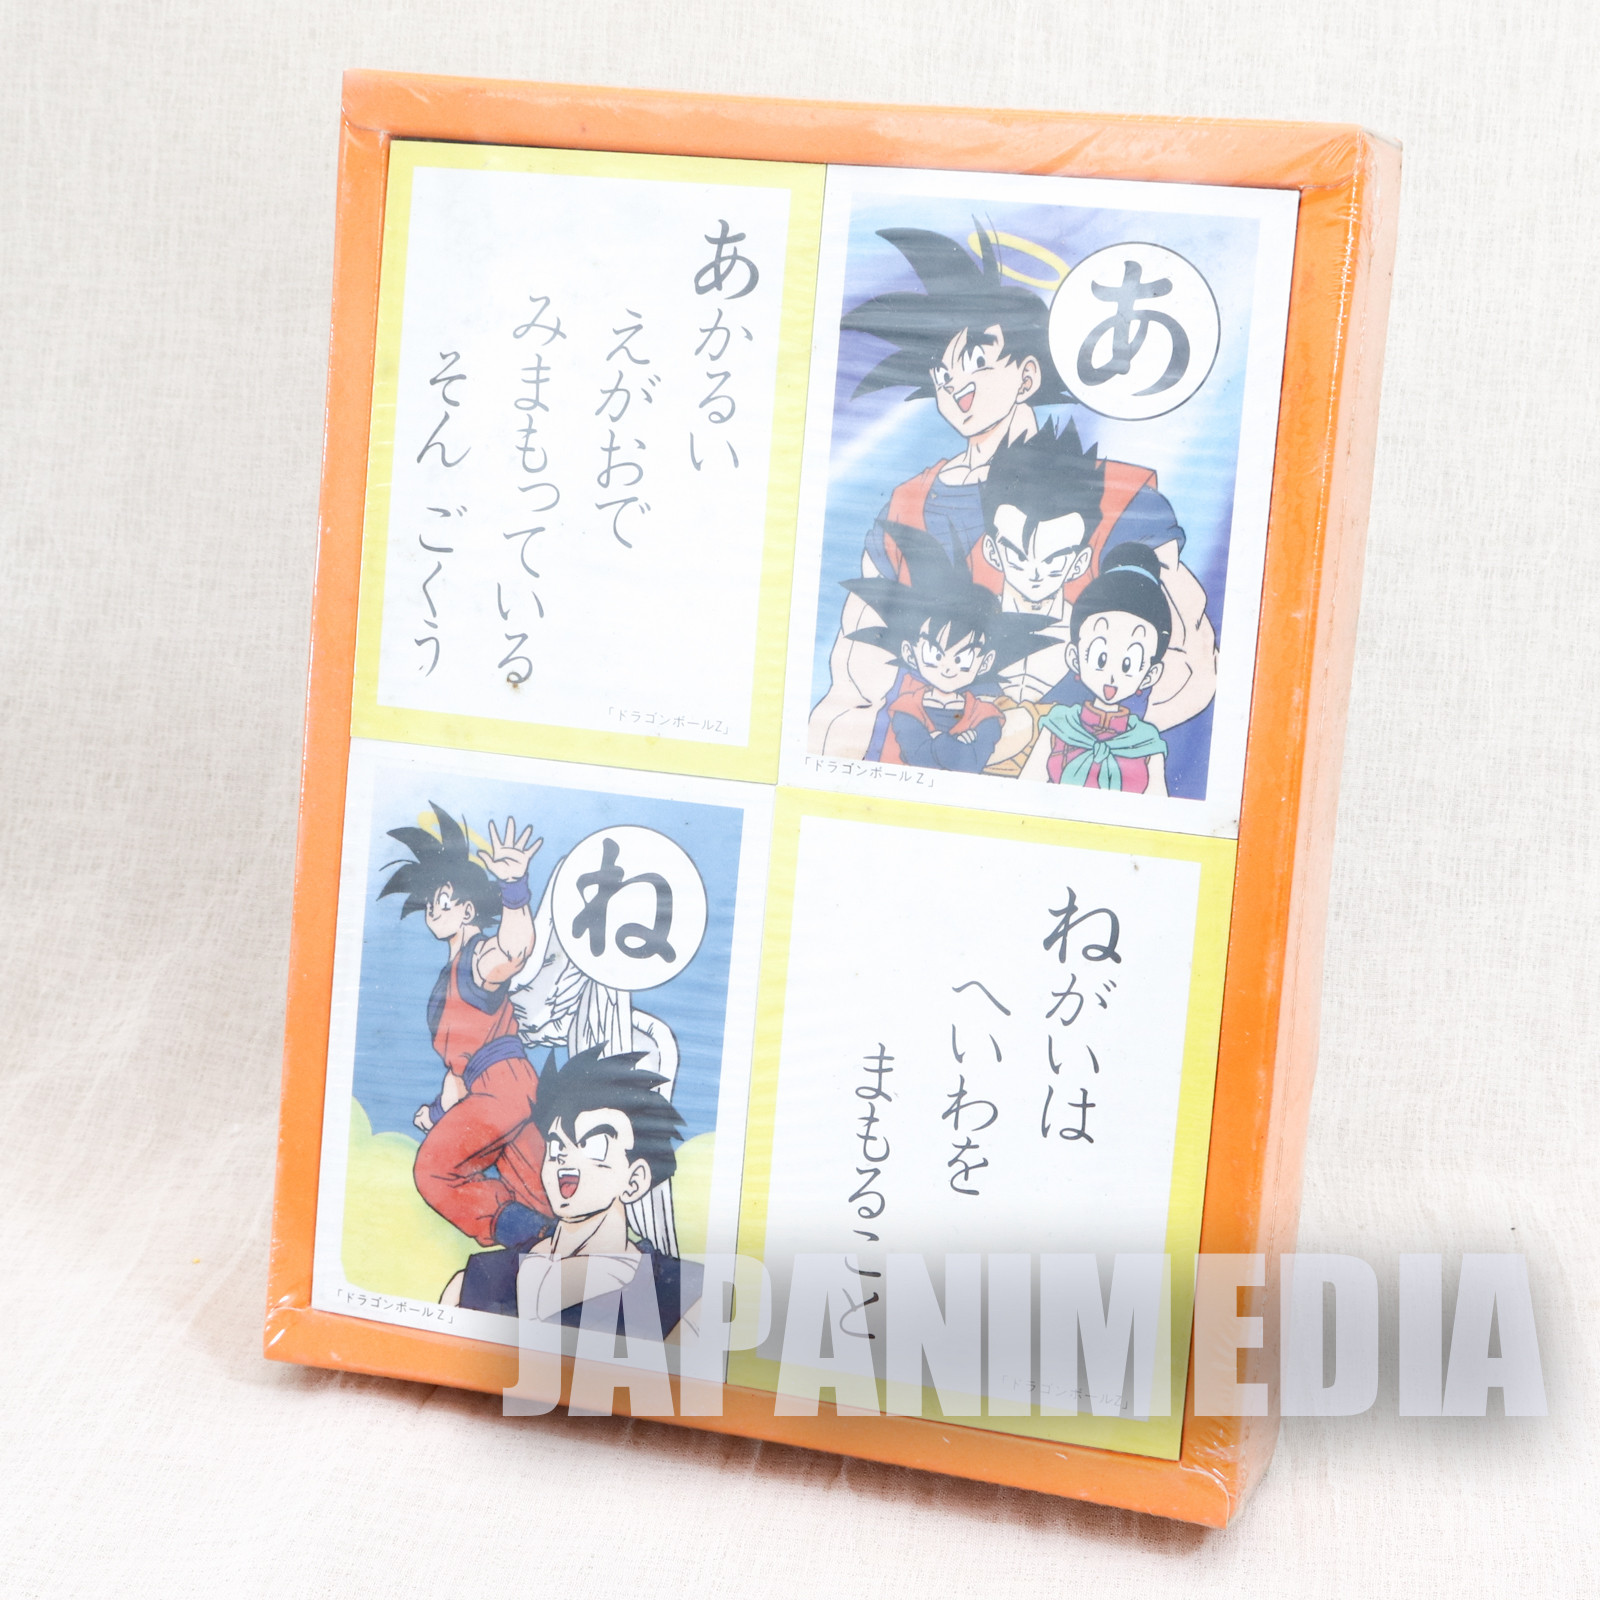 Dragon Ball Z Japanese Playing Cards KARUTA GAME Showa Note JAPAN ANIME